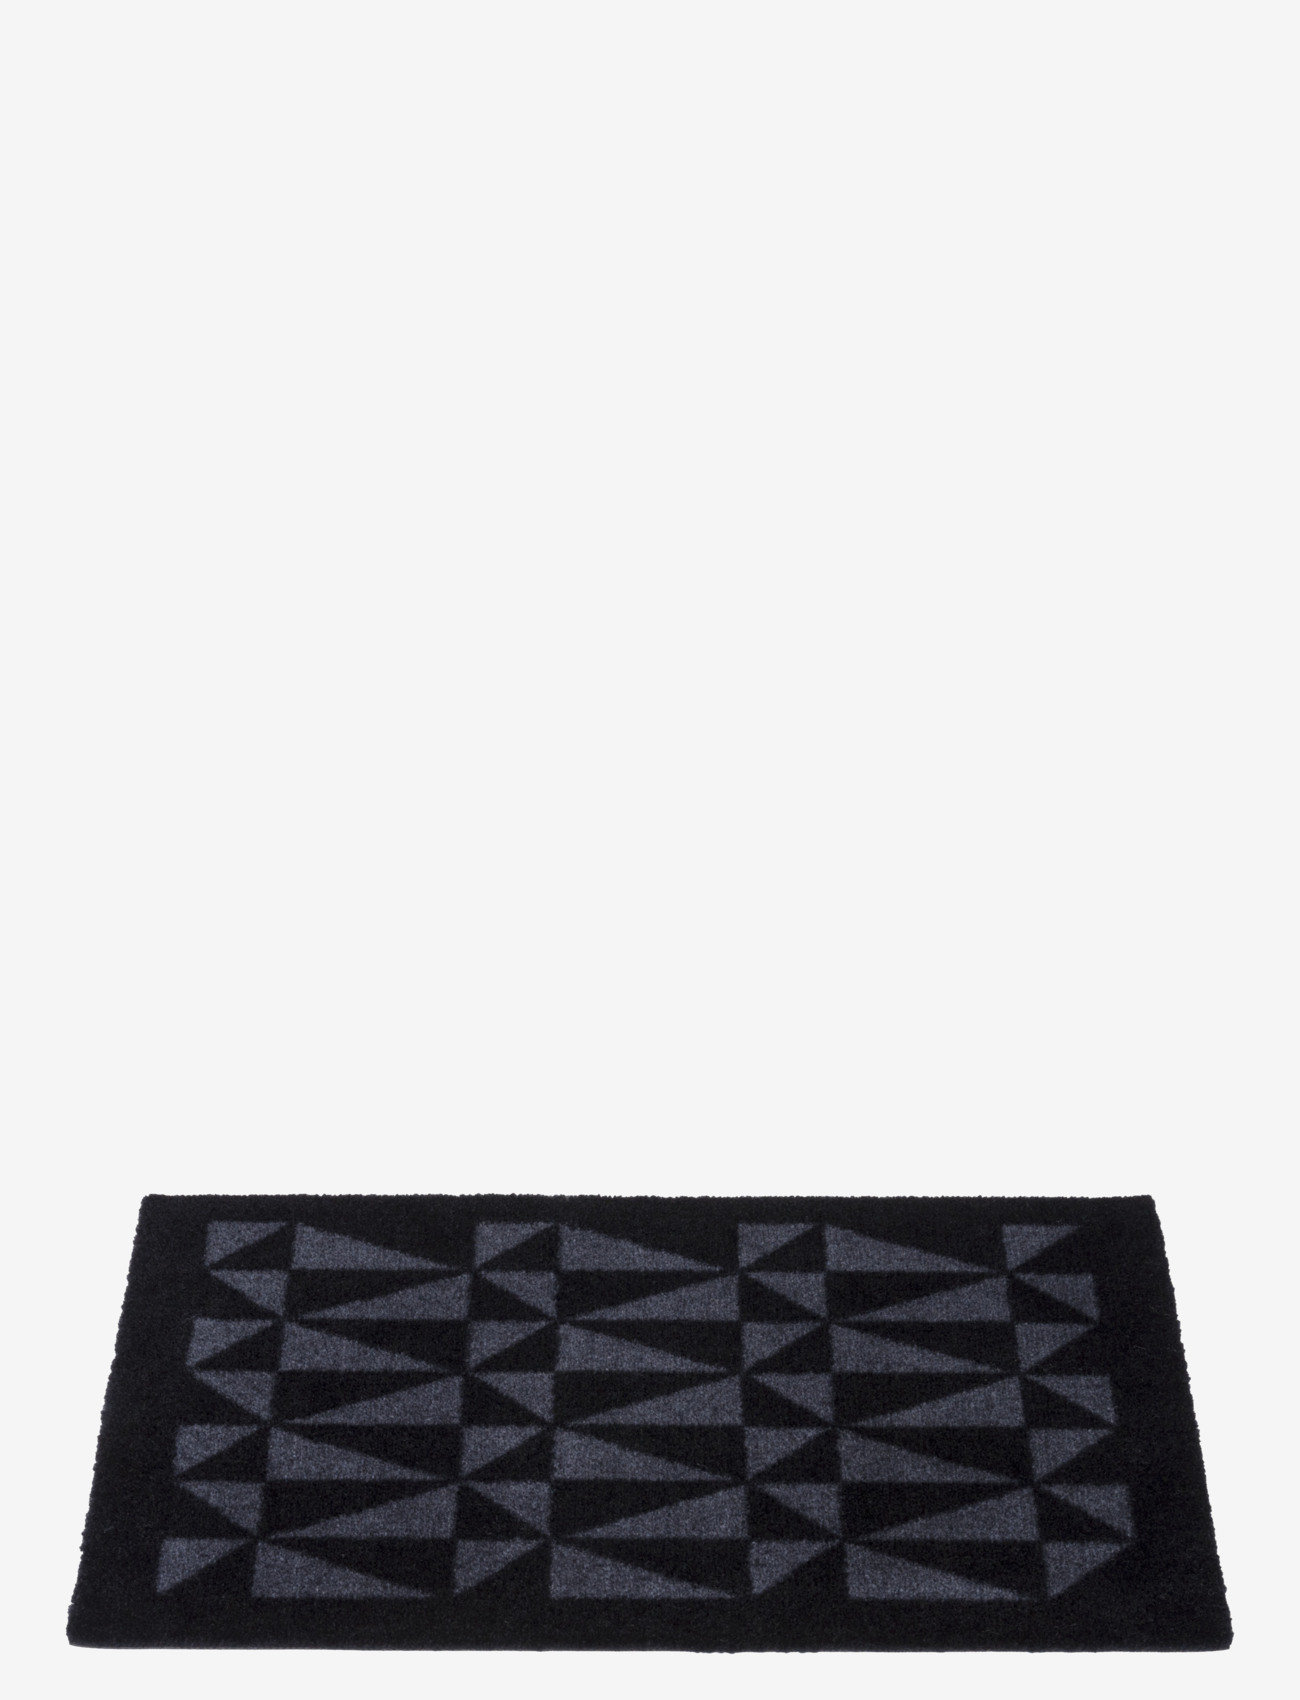 tica copenhagen - Floormat polyamide, 60x40 cm, graphic design - doormats - black/grey - 1